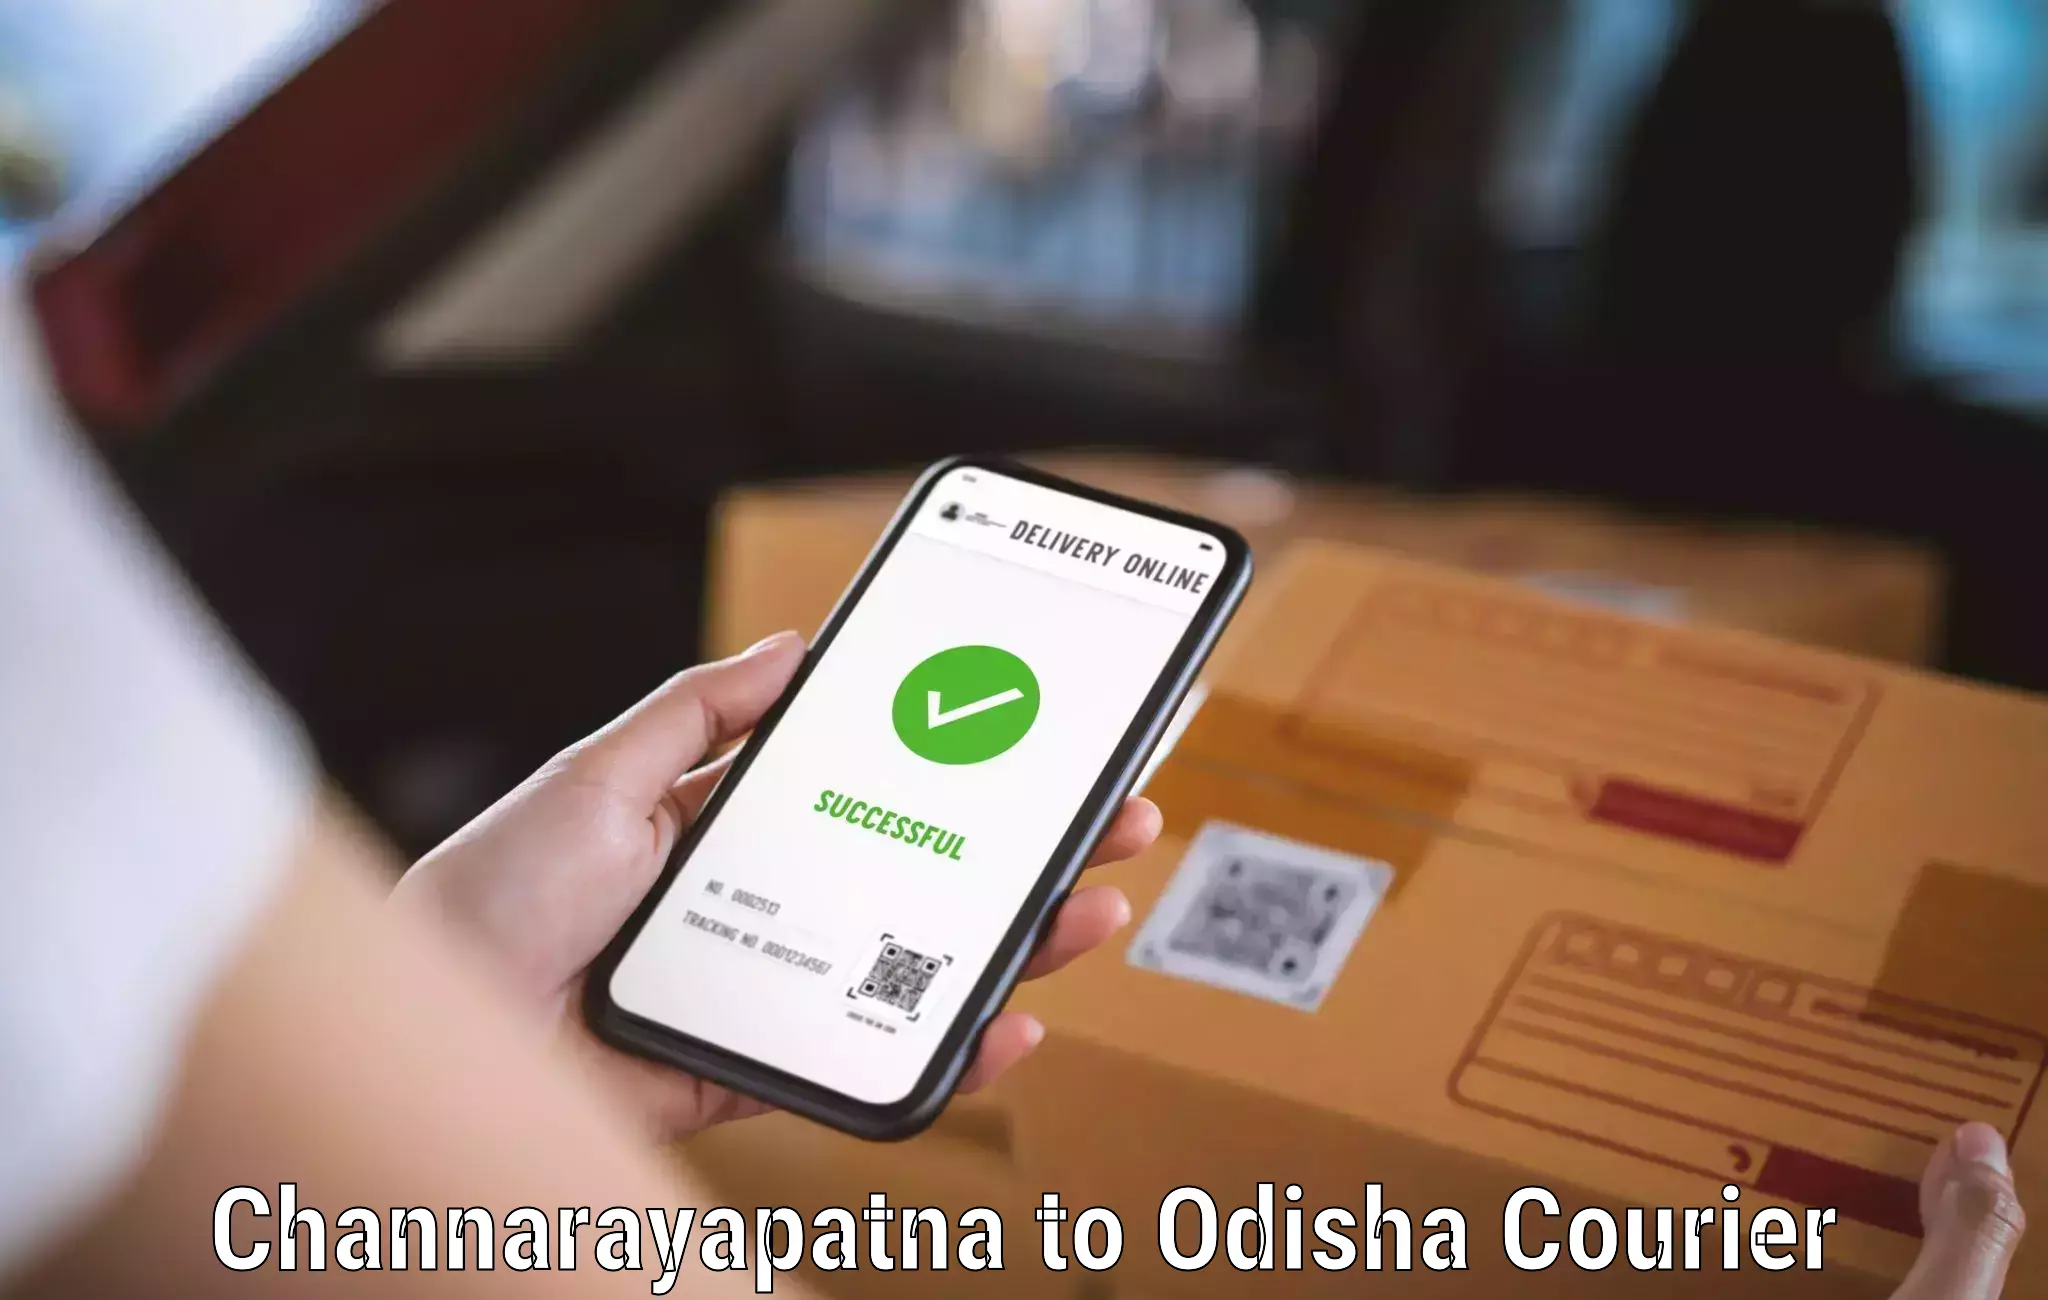 Automated shipping processes Channarayapatna to Gajapati